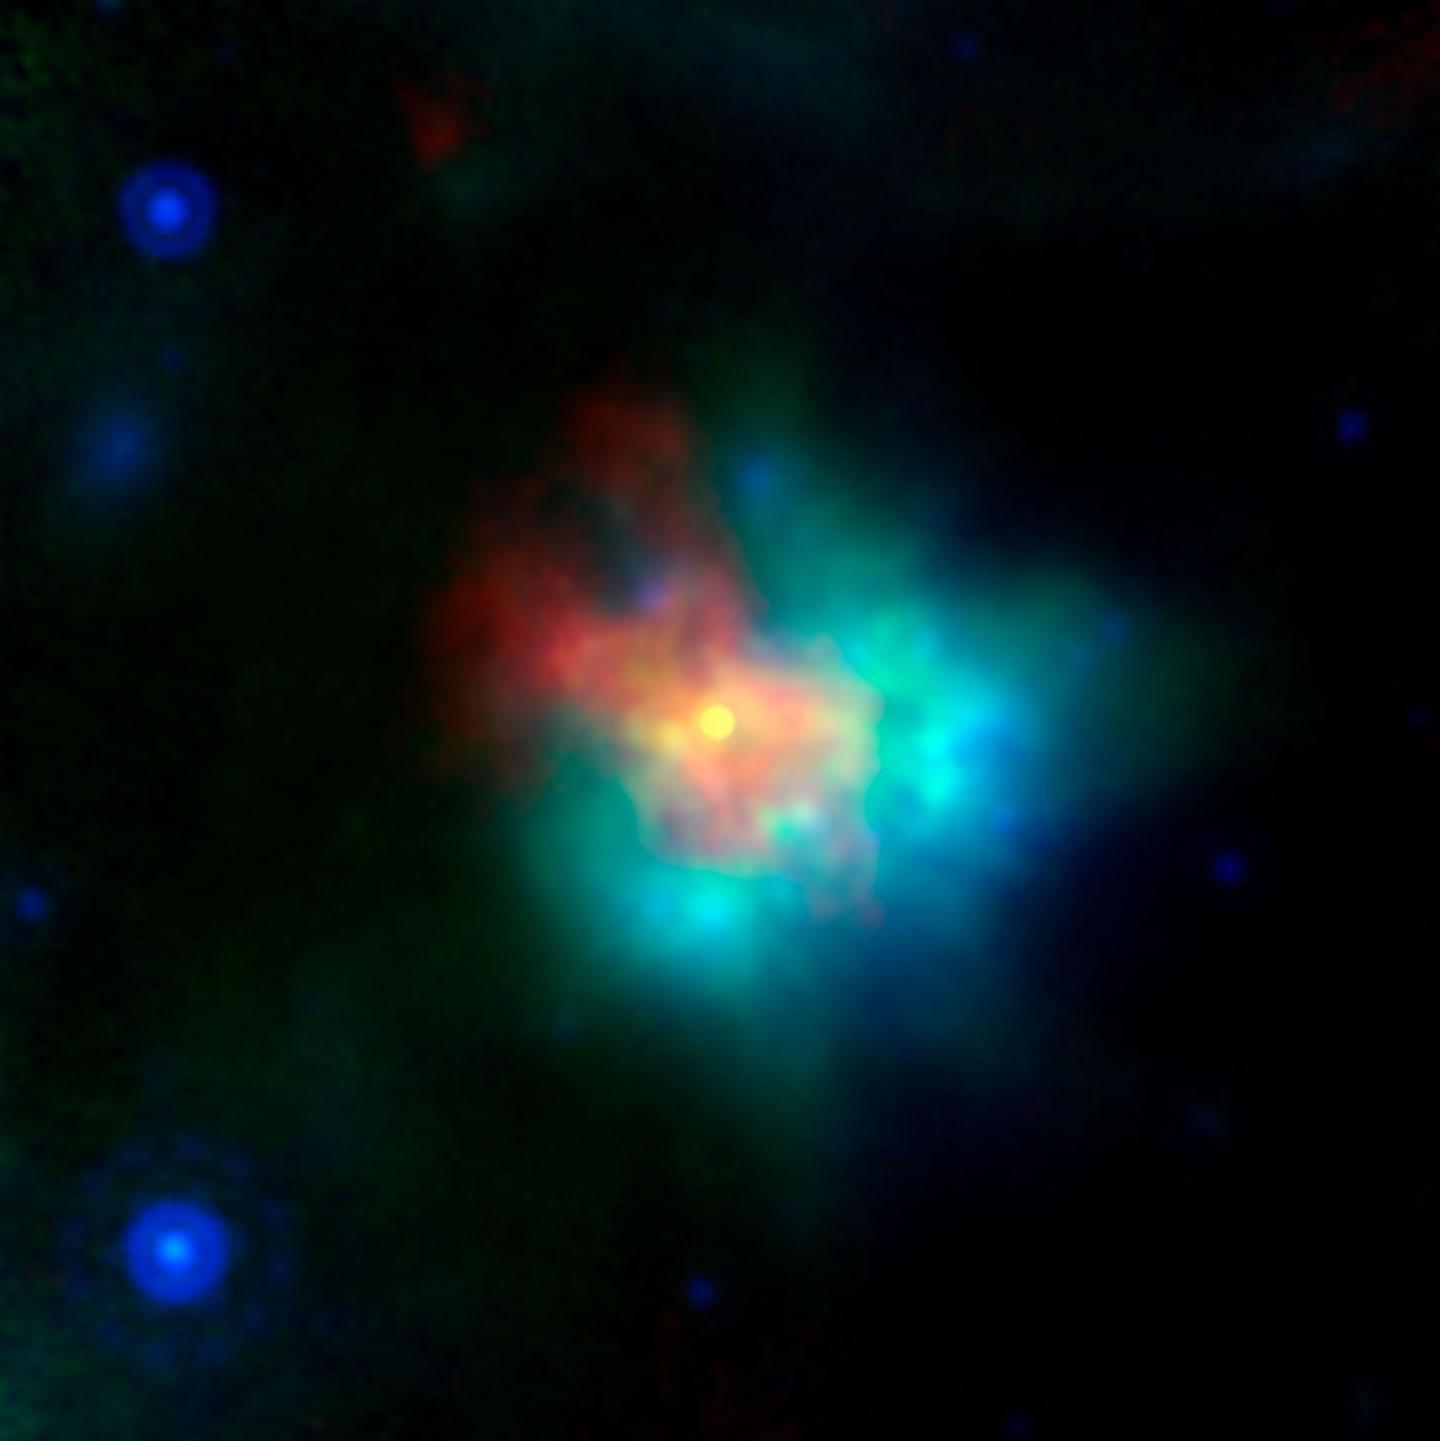 Image of a supernova G54